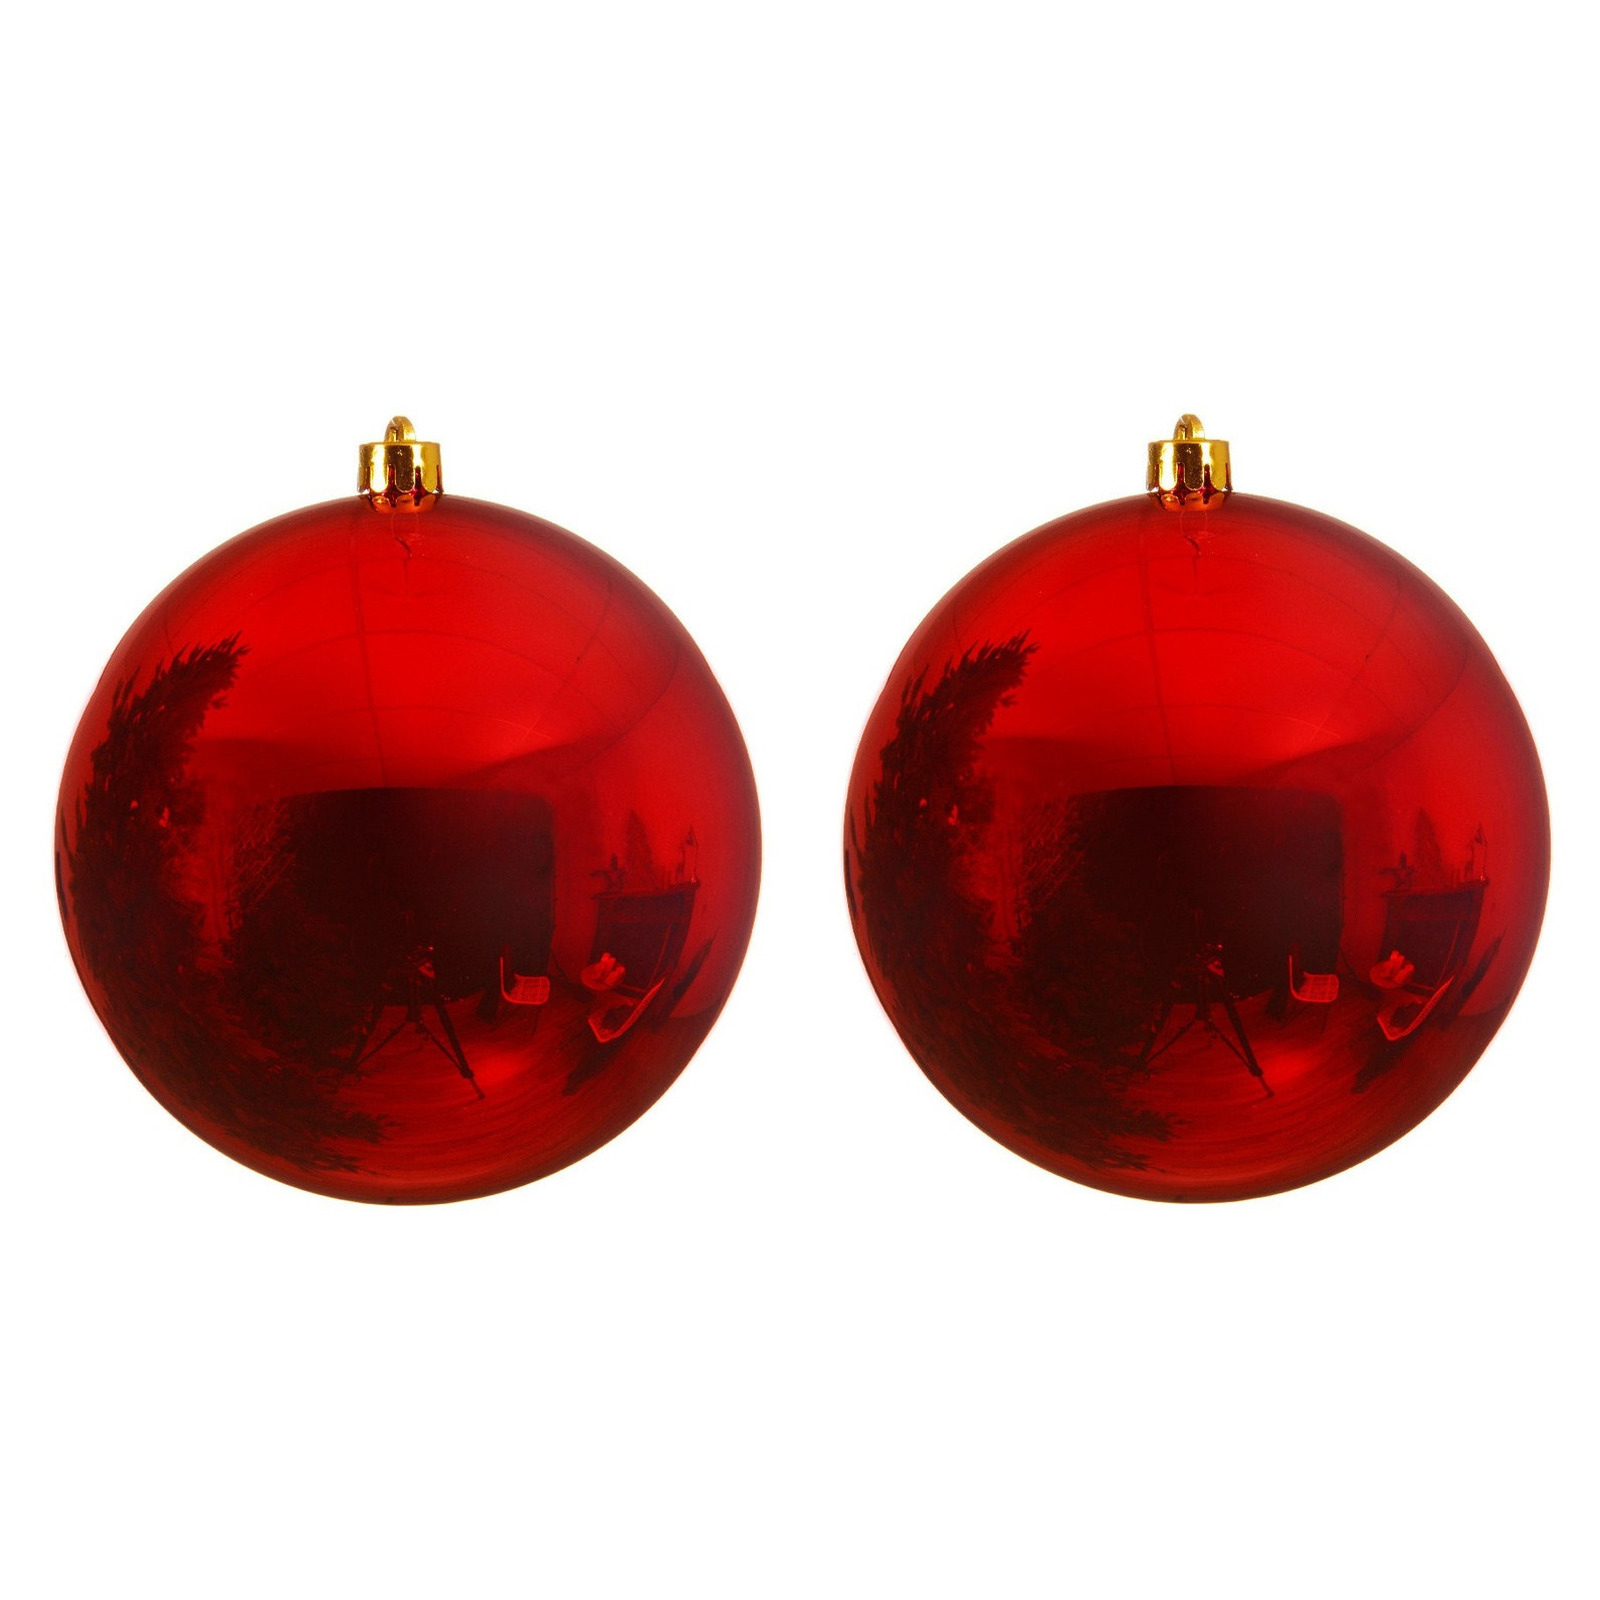 2x Grote raam-deur-kerstboom decoratie rode kerstballen 25 cm glans